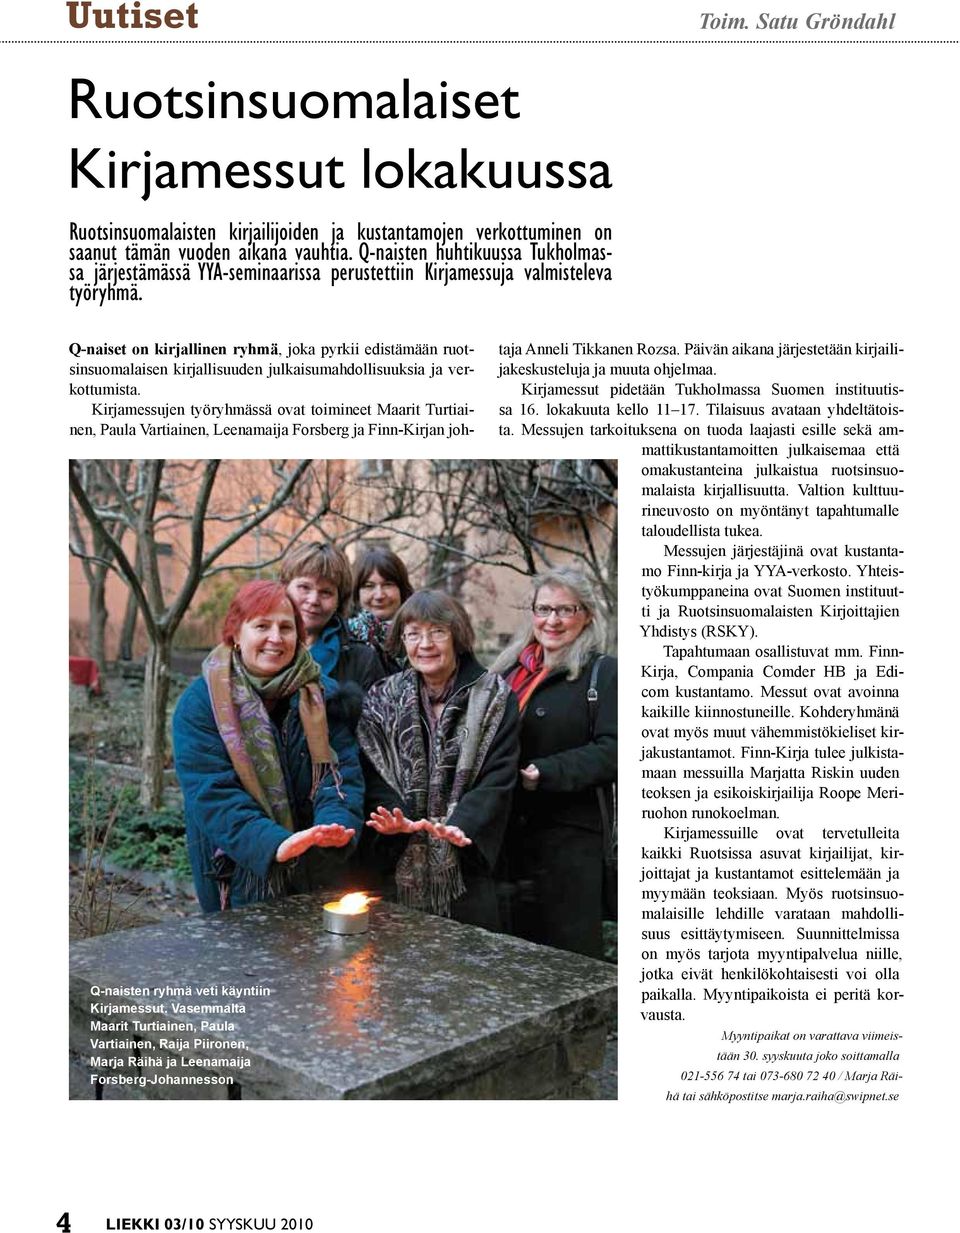 Vasemmalta Maarit Turtiainen, Paula Vartiainen, Raija Piironen, Marja Räihä ja Leenamaija Forsberg-Johannesson Q-naiset on kirjallinen ryhmä, joka pyrkii edistämään ruotsinsuomalaisen kirjallisuuden